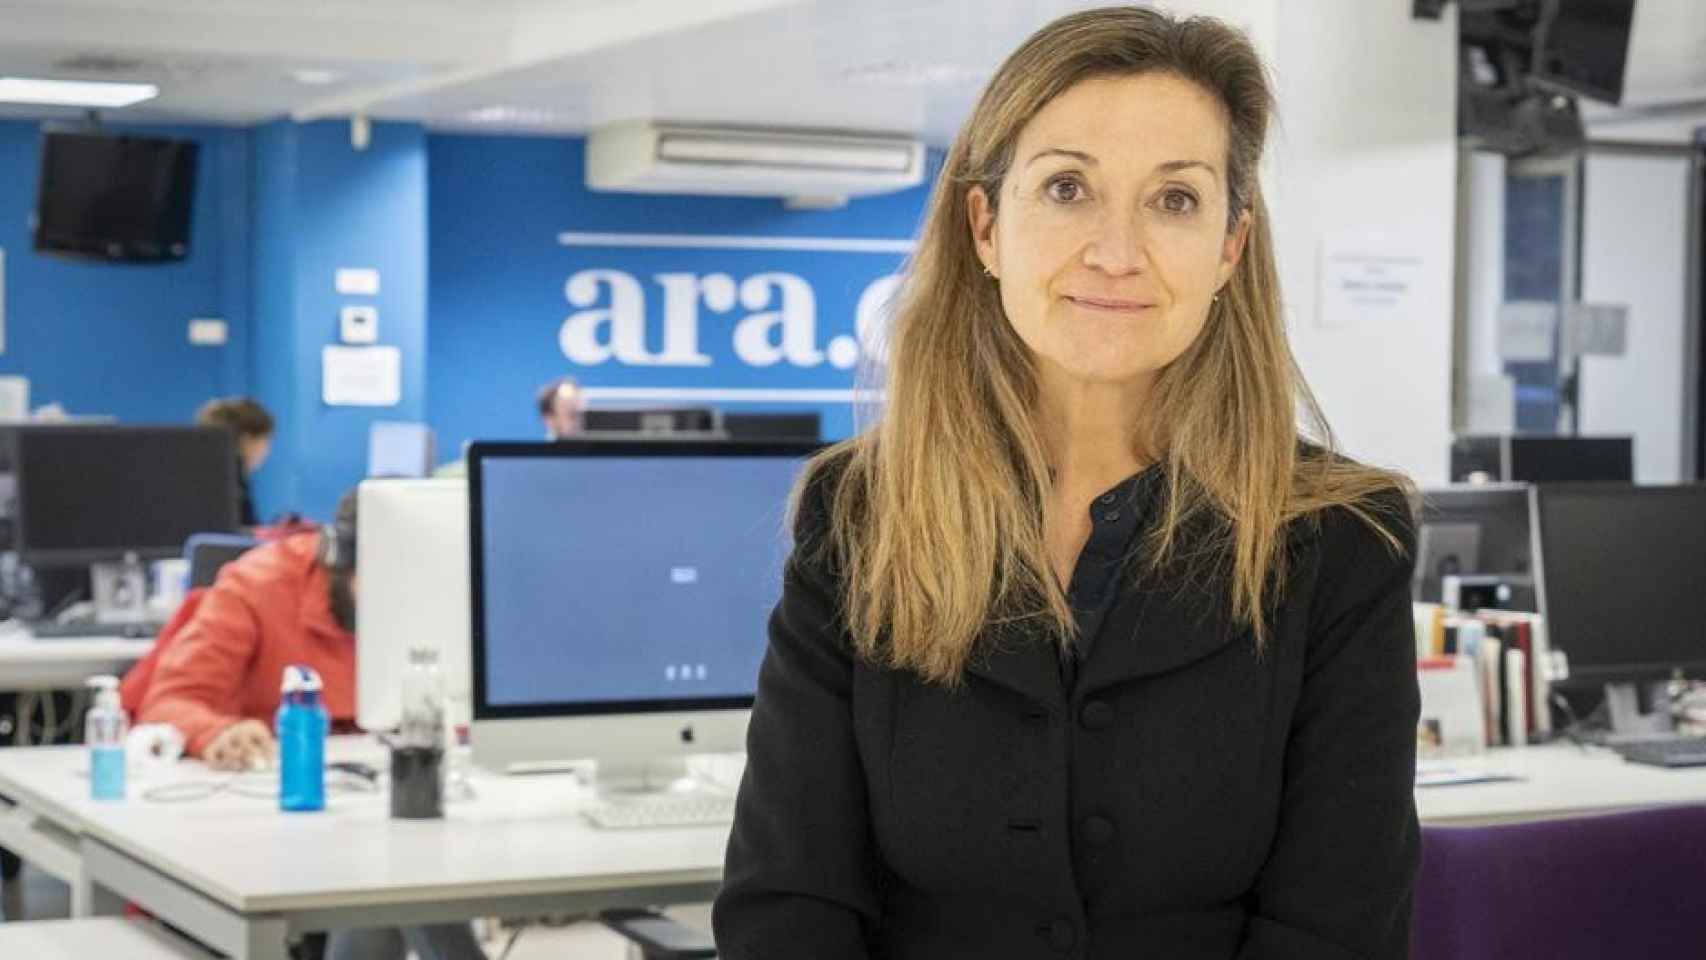 La directora del diario 'Ara', Esther Vera / CG